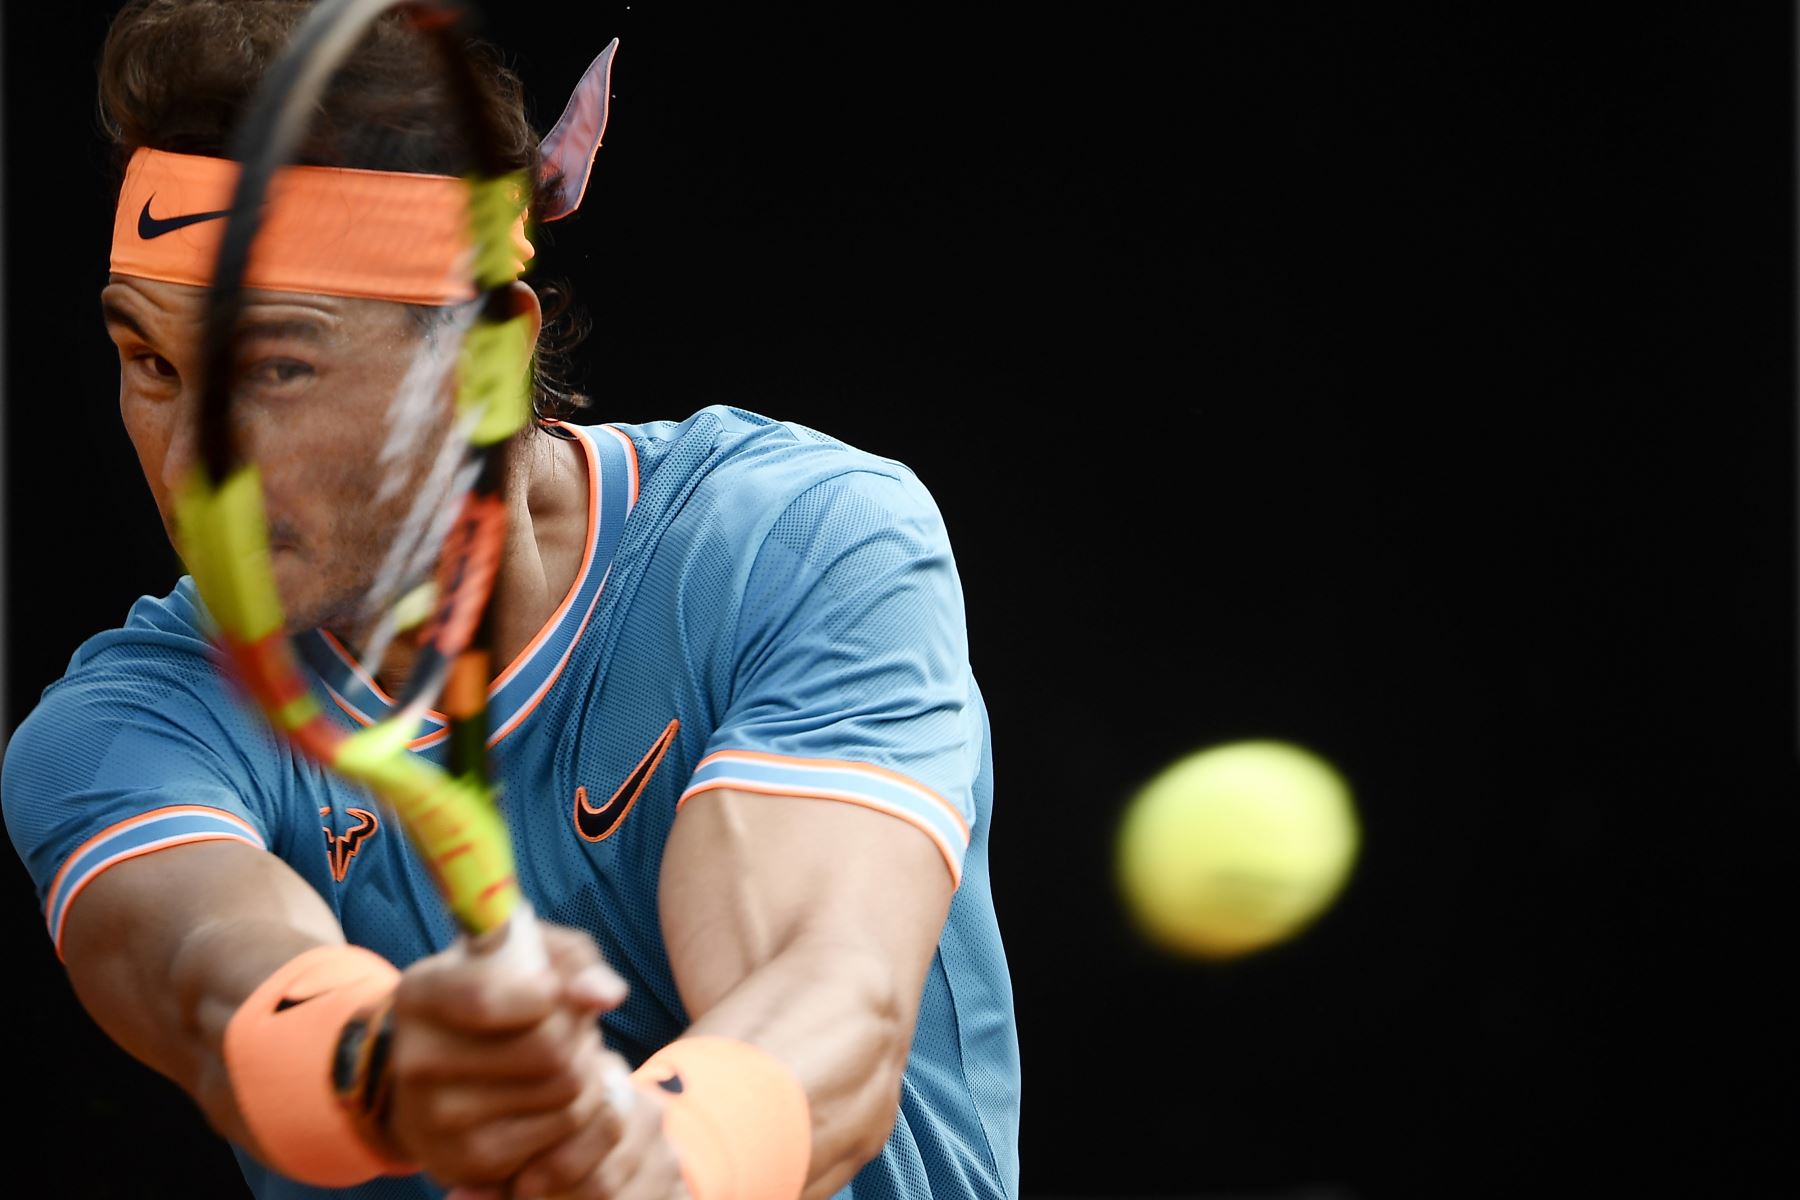 Rafael Nadal de España devuelve un revés a Novak Djokovic de Serbia durante su último partido de tenis del torneo ATP Masters en el Foro Italico en Roma.
Foto:AFP